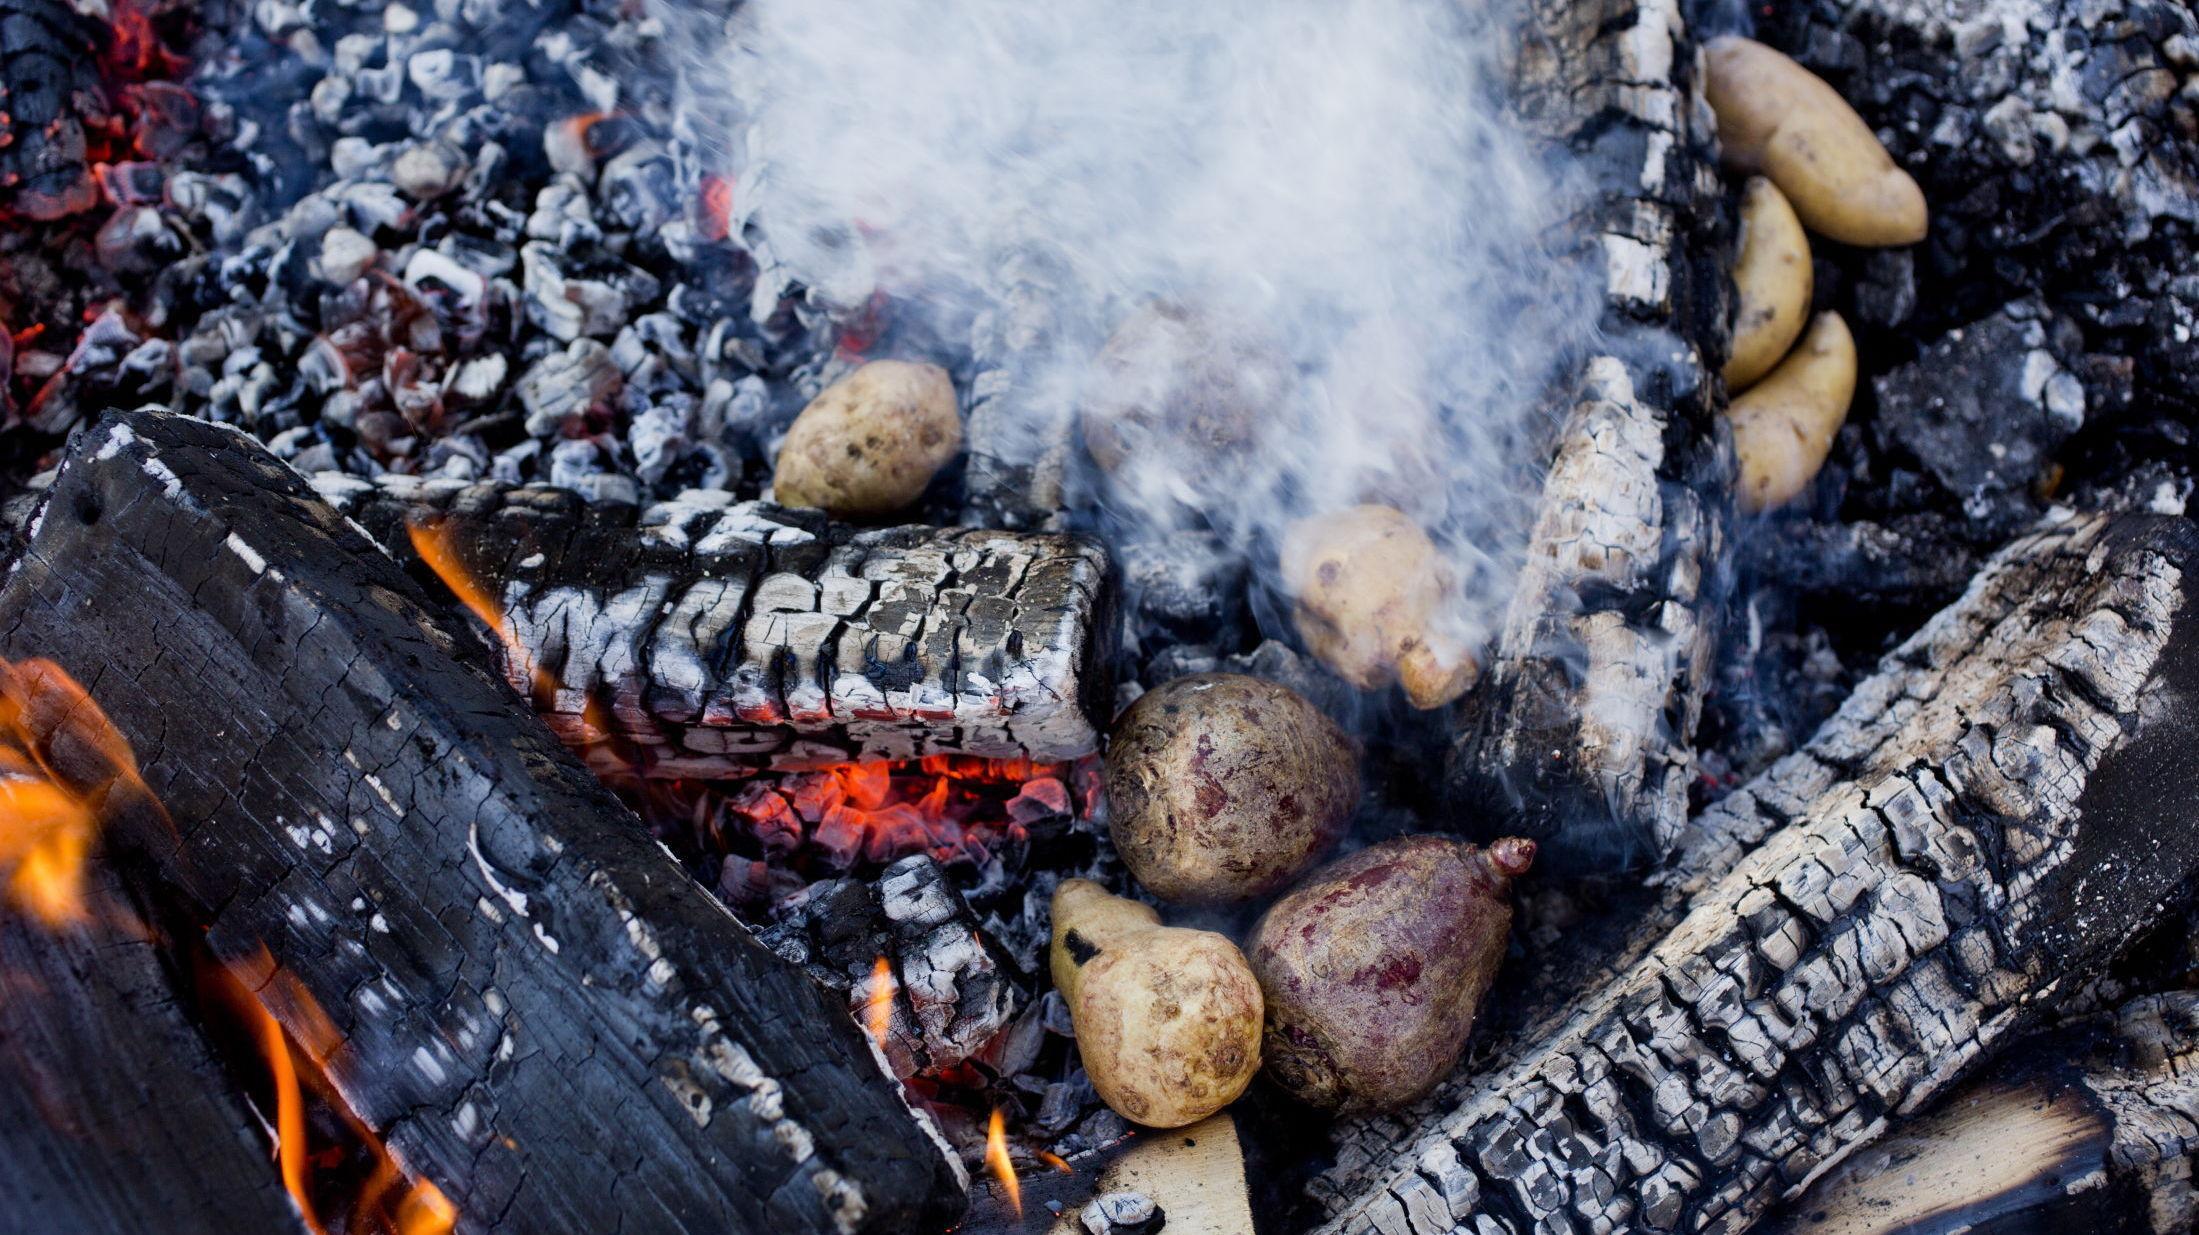 SMAKFULLT: Bak jordskokk, poteter og rødbeter rett i glørne på bålet, det setter en ekstra smak på måltidet.